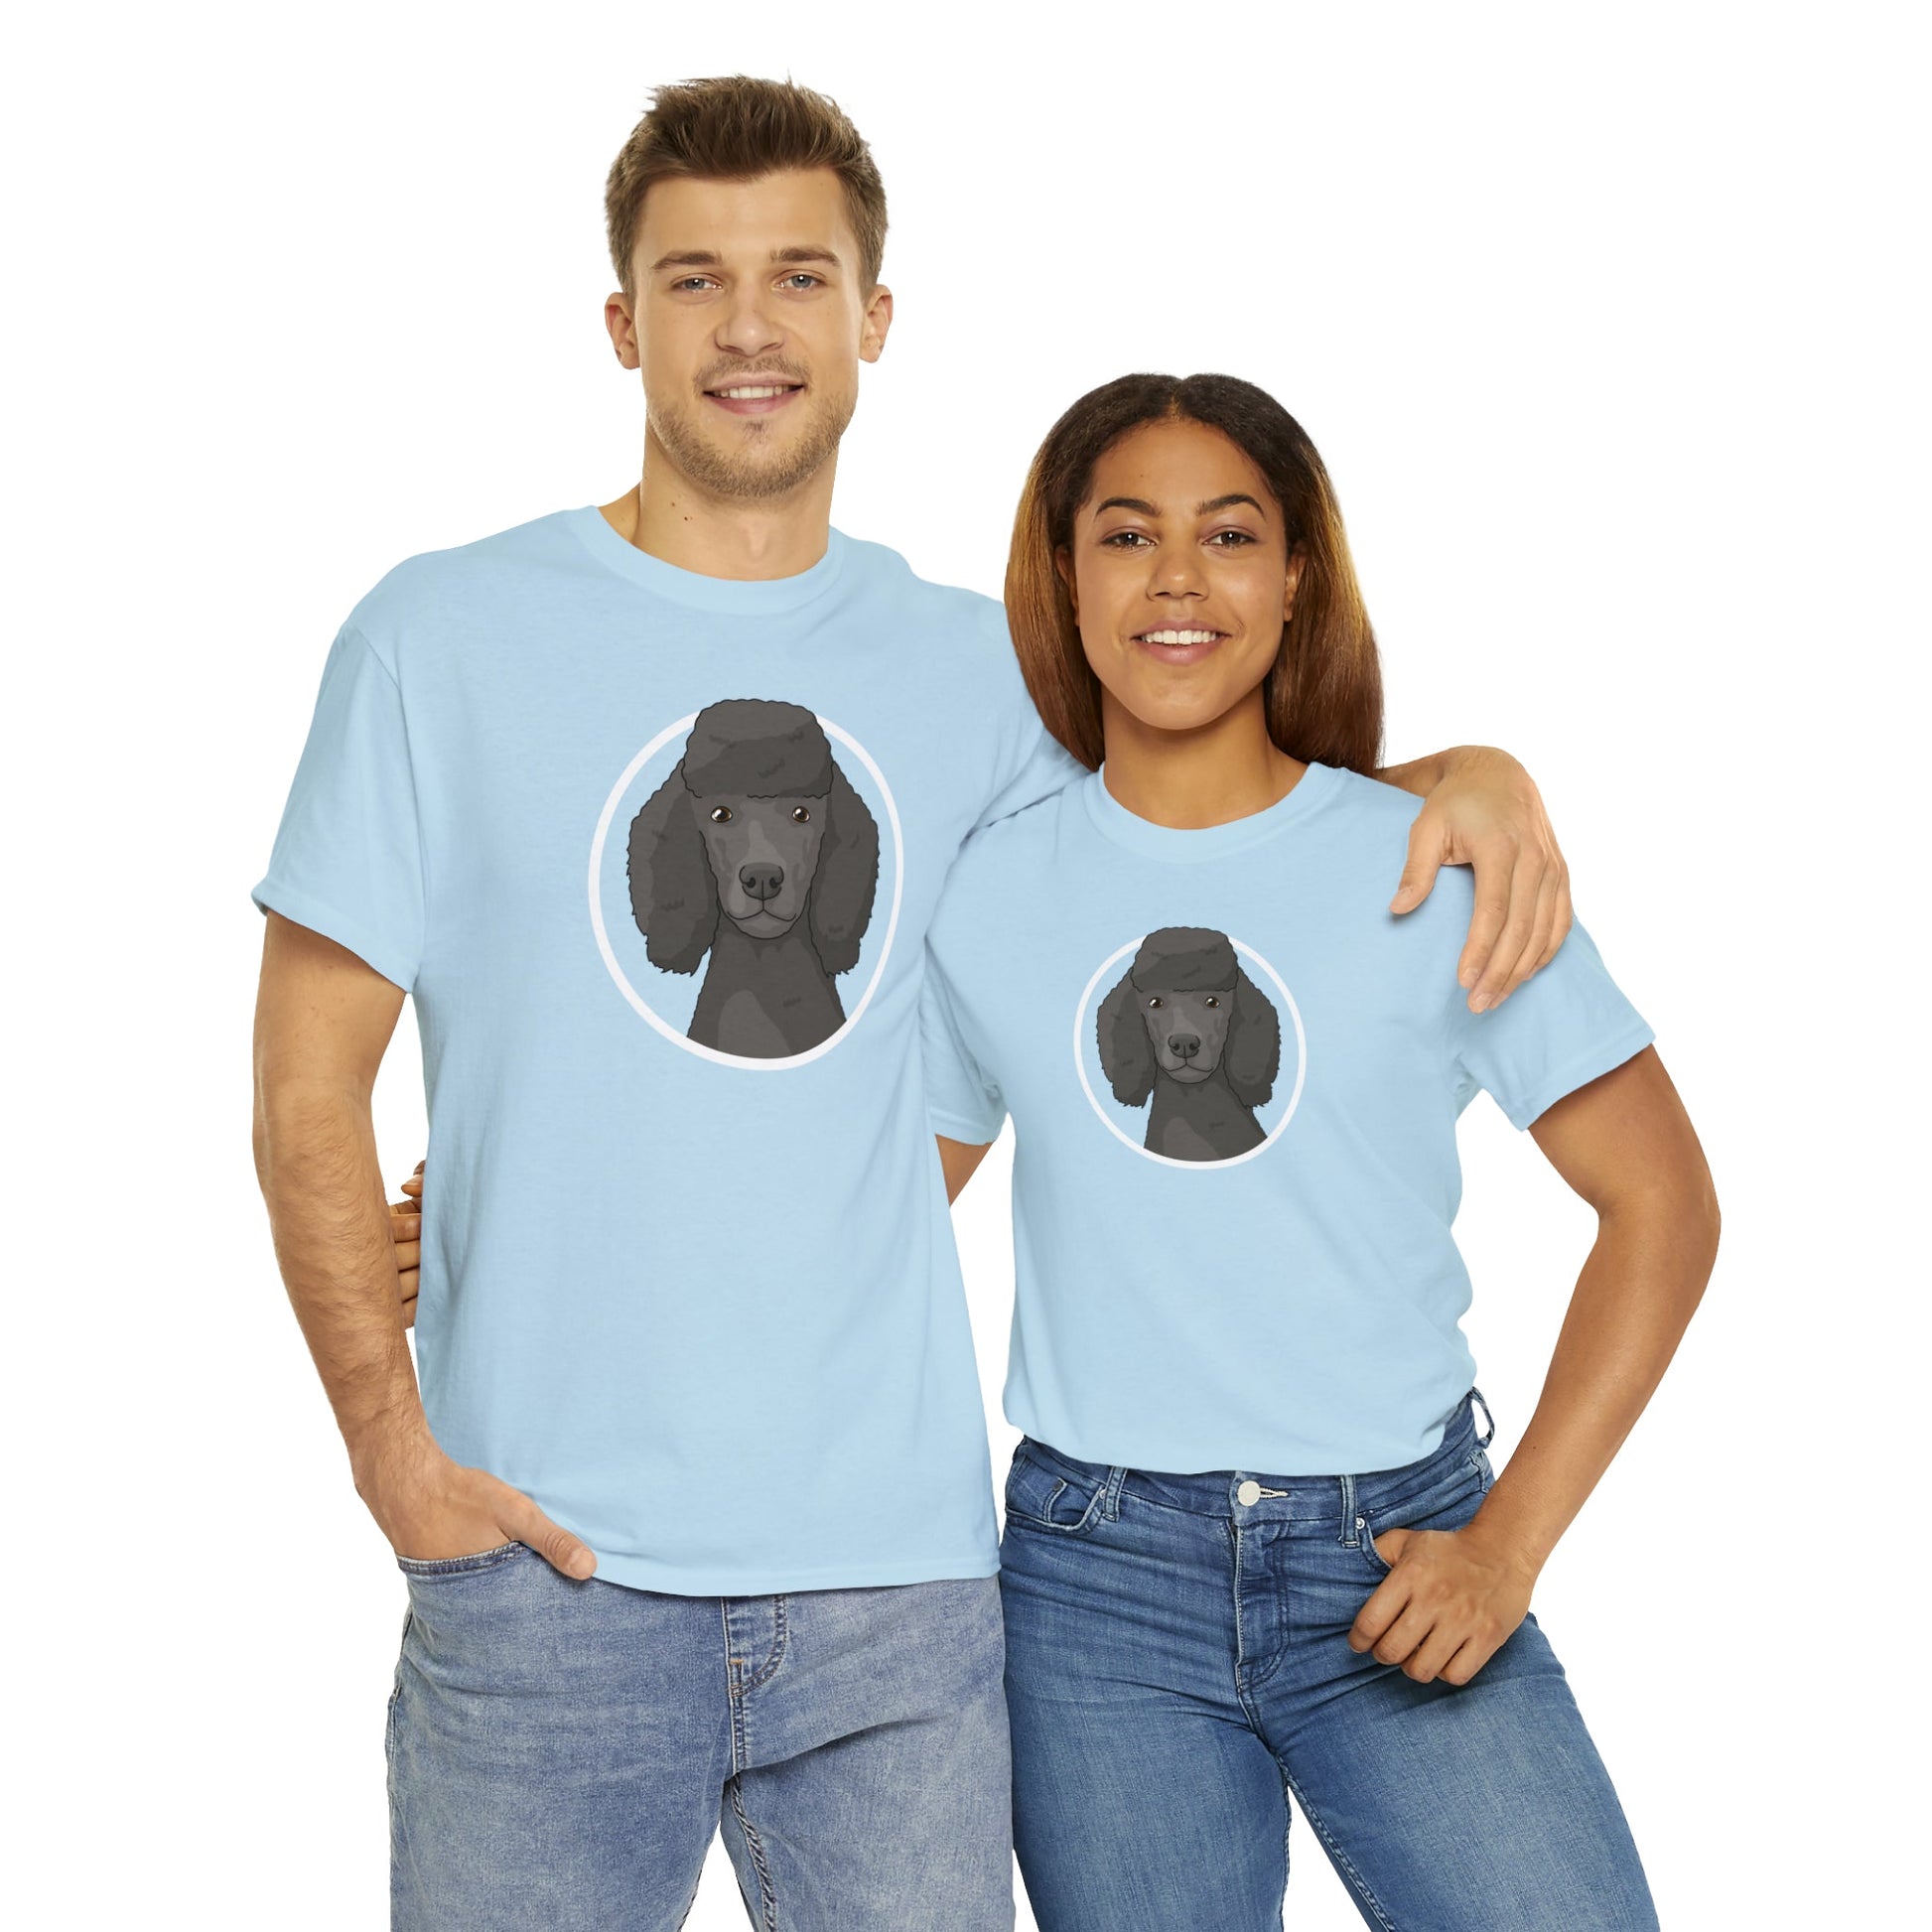 Poodle Circle | T-shirt - Detezi Designs-15810841610035219293